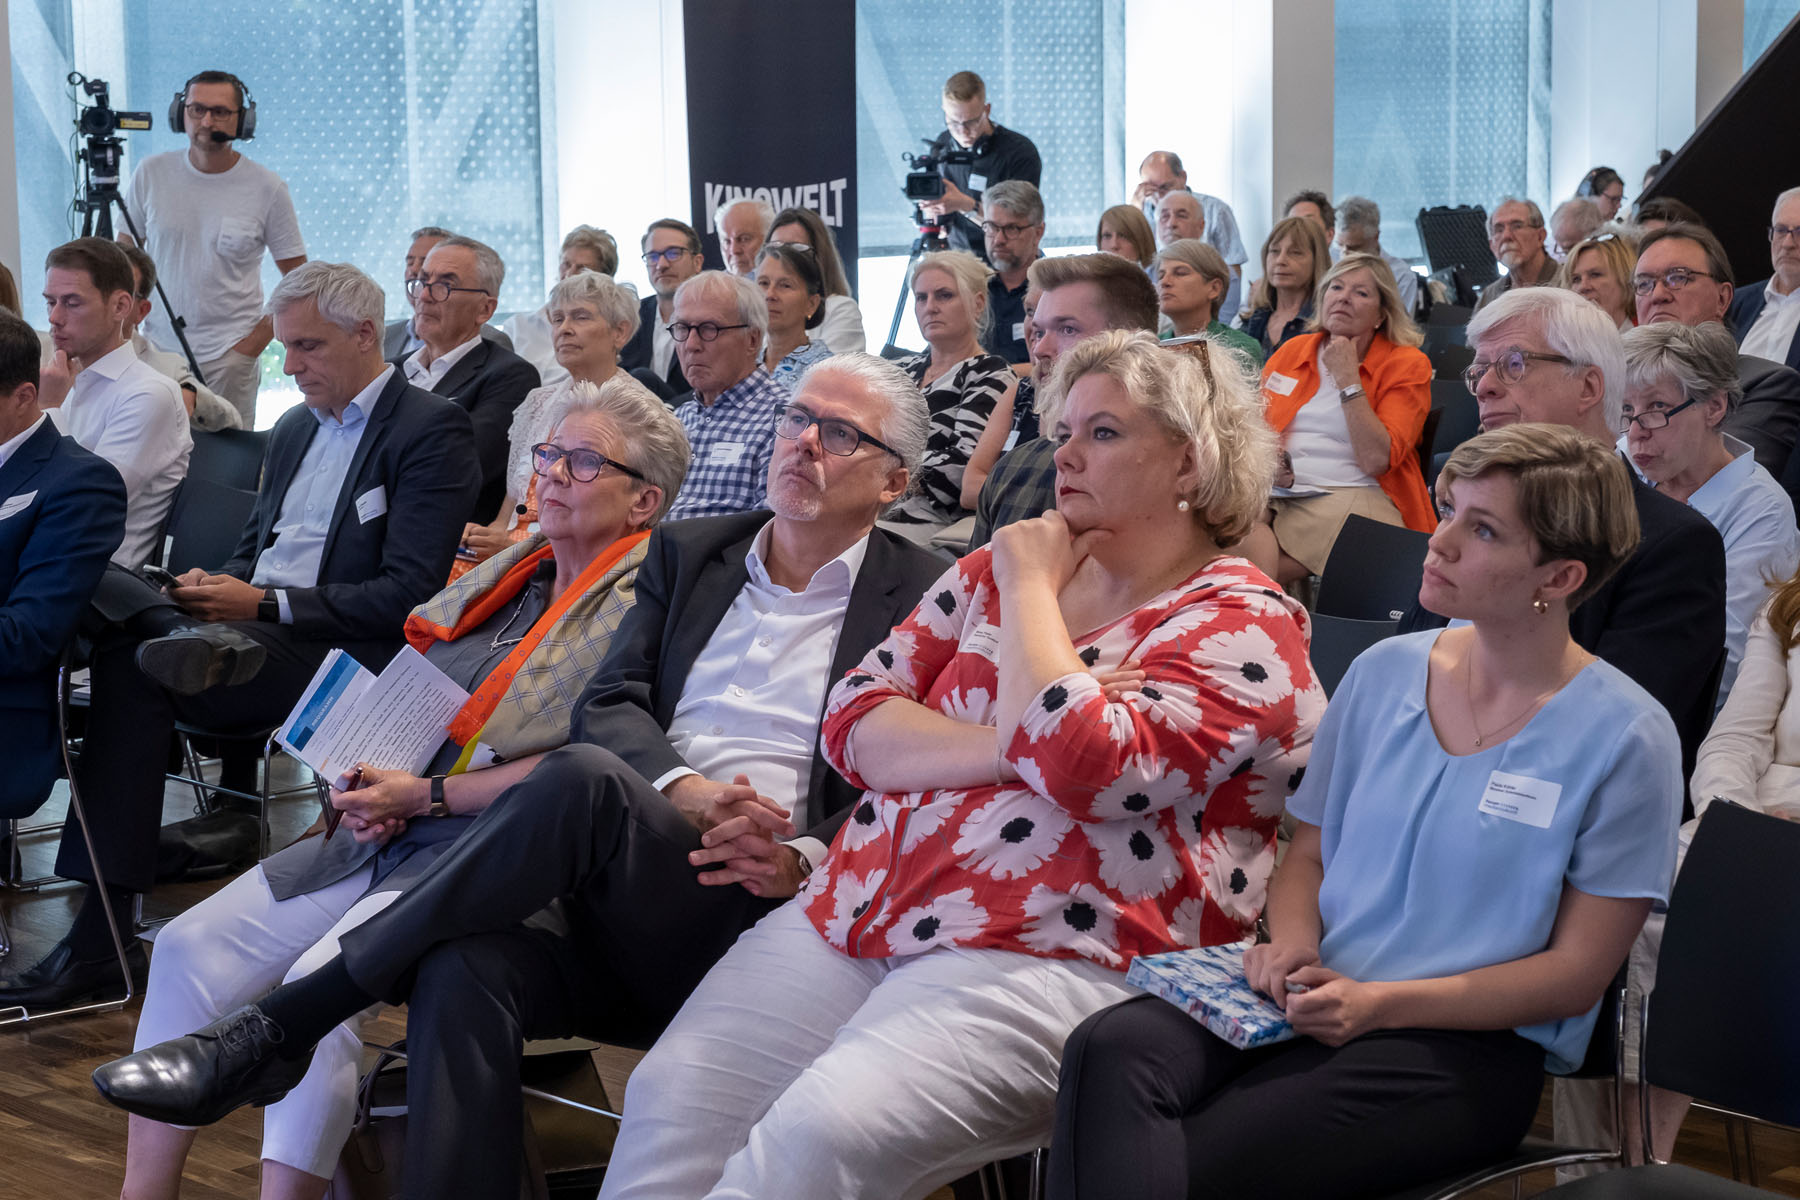 Aufmerksames Publikum im Großen Vortragssaal der Evangelischen Akademie Frankfurt | ©Guido Schiefer